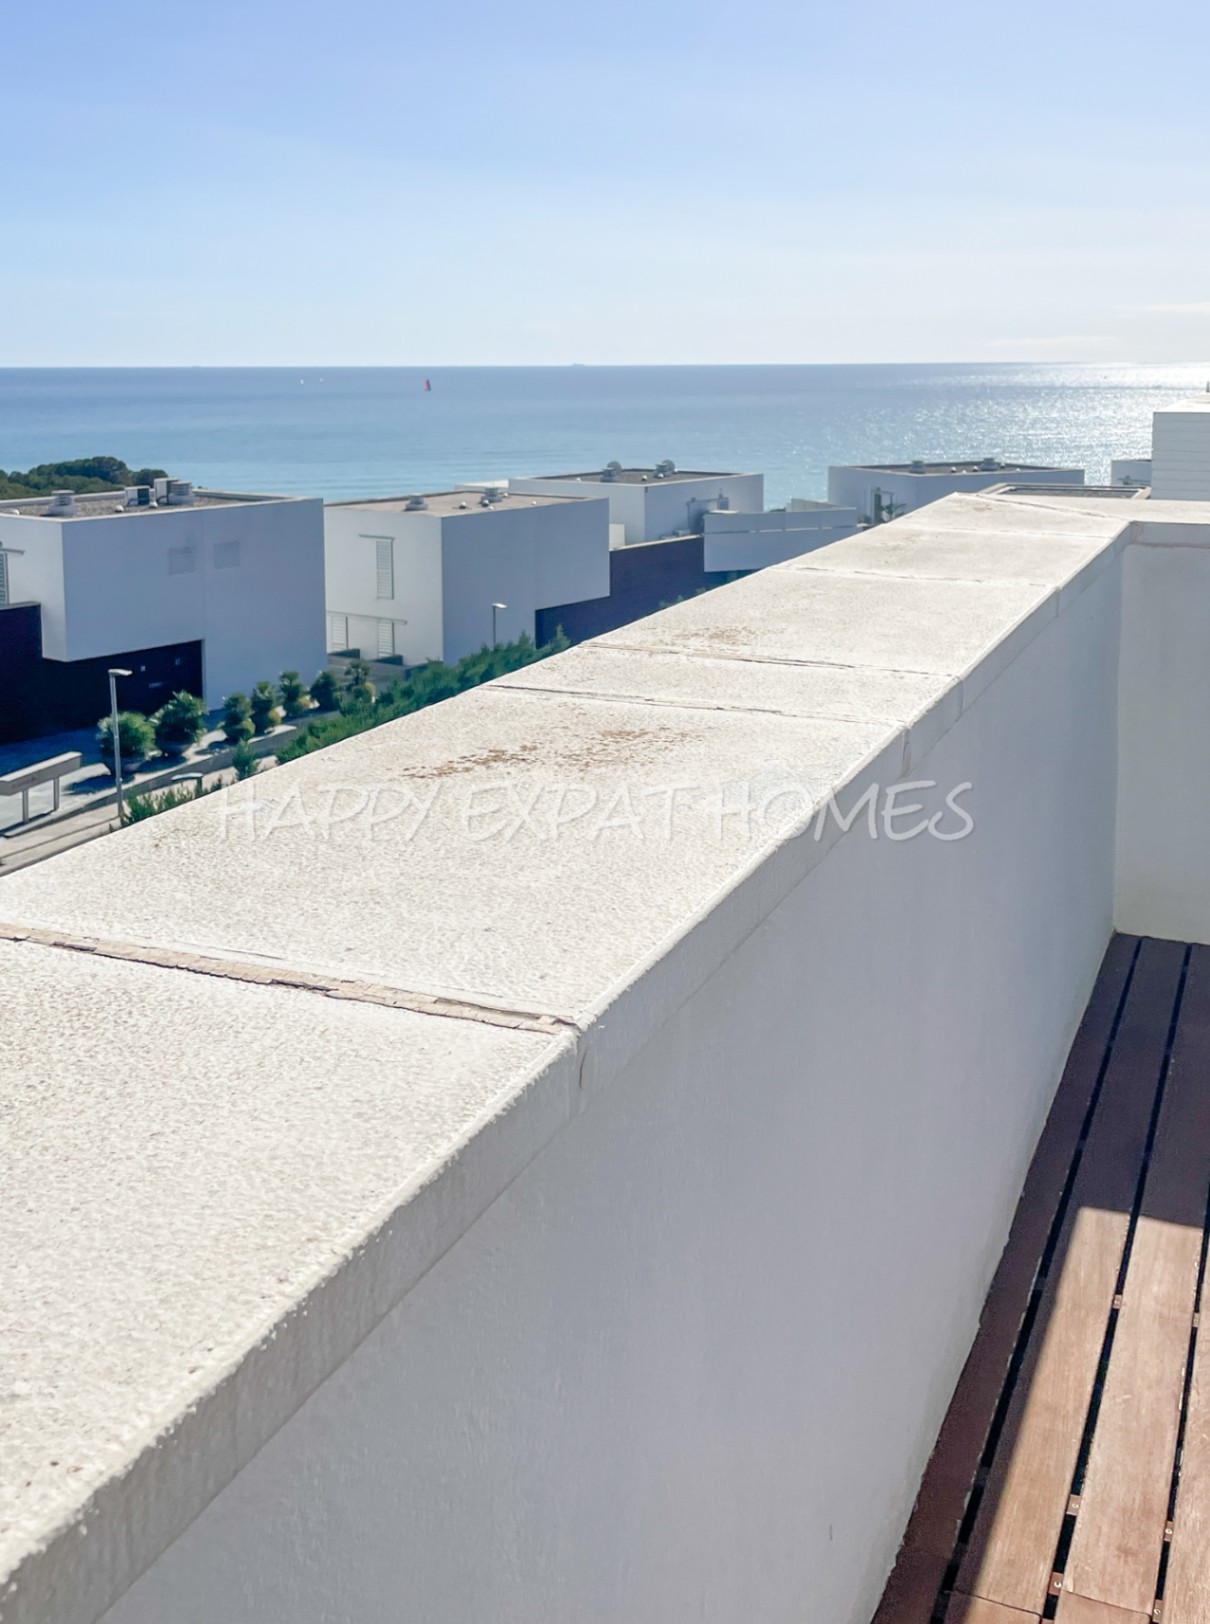 Elegante duplex met uitzicht op zee in de buurt van Sitges